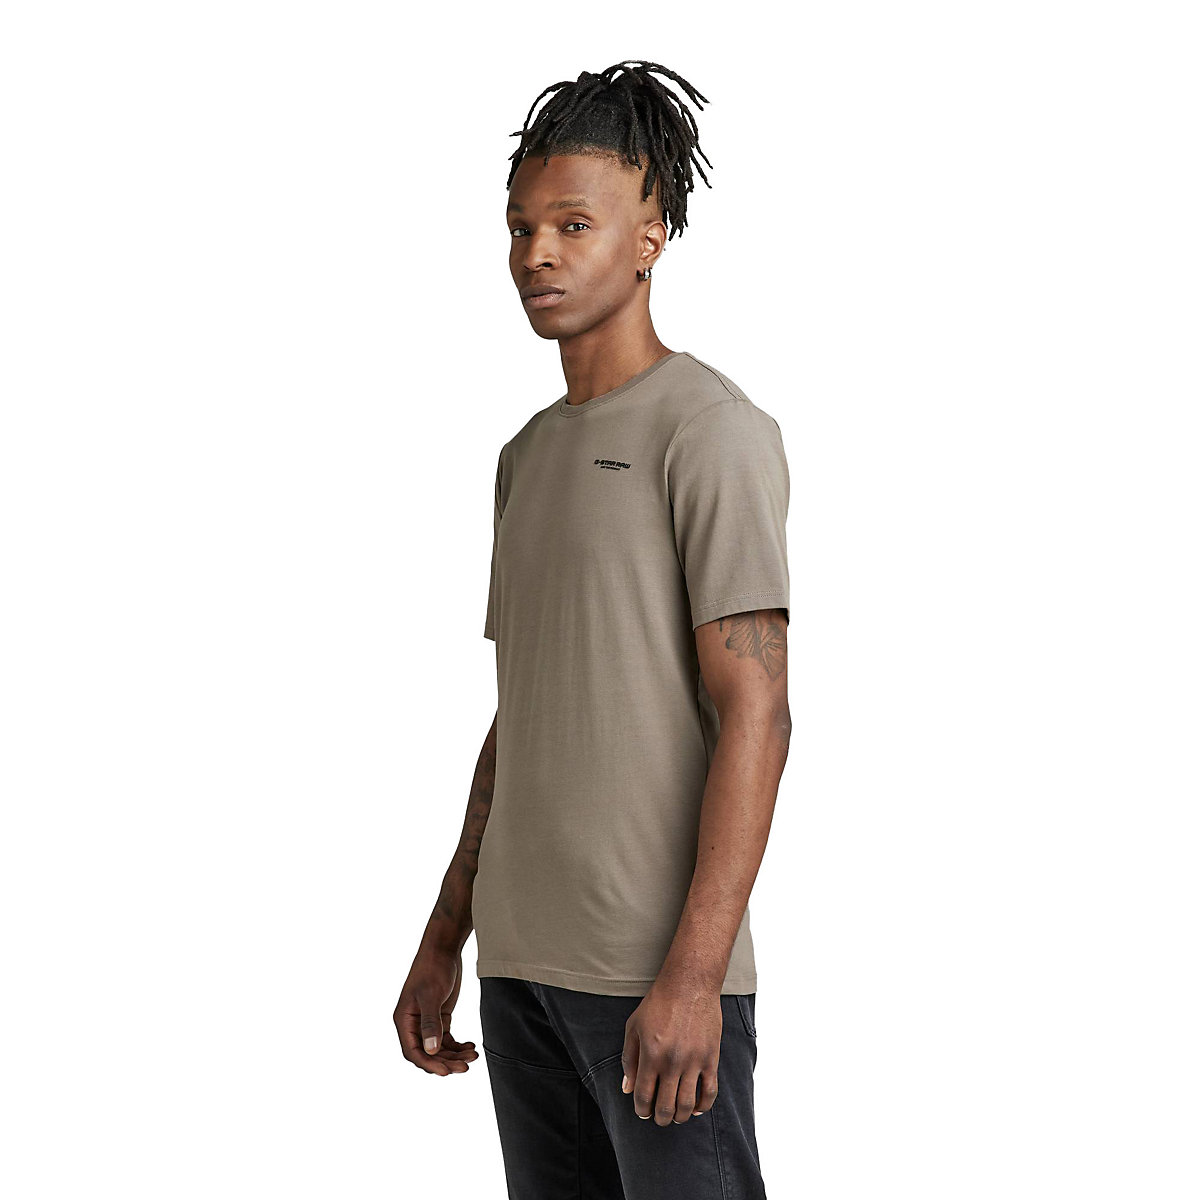 G-Star RAW Herren T-Shirt Slim Base Rundhals Organic Cotton Stretch Jersey T-Shirts taupe PR11297